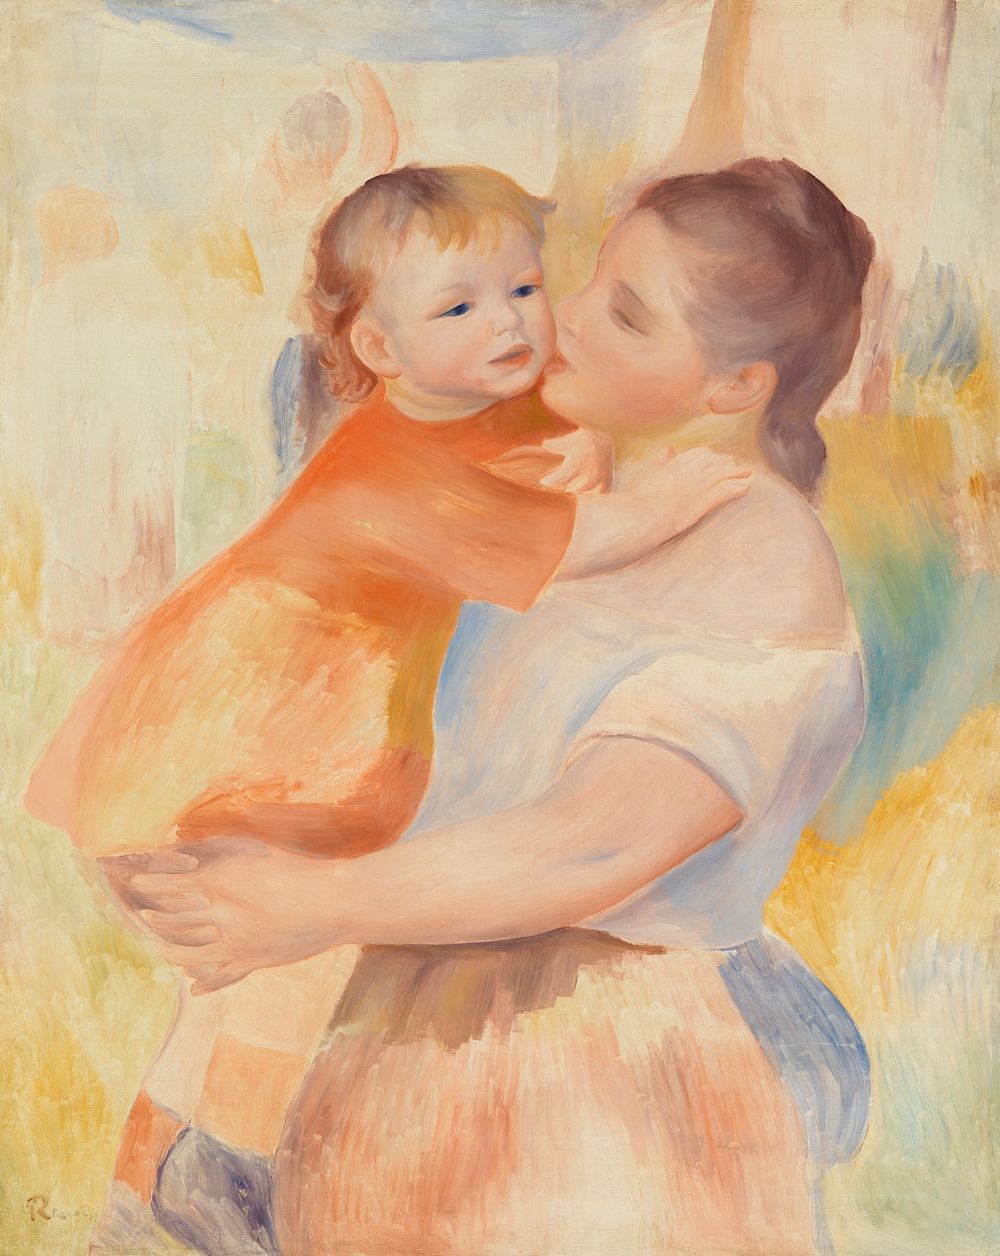 Washerwoman and Child (La Blanchisseuse et son enfant) (1886) by Pierre-Auguste Renoir.